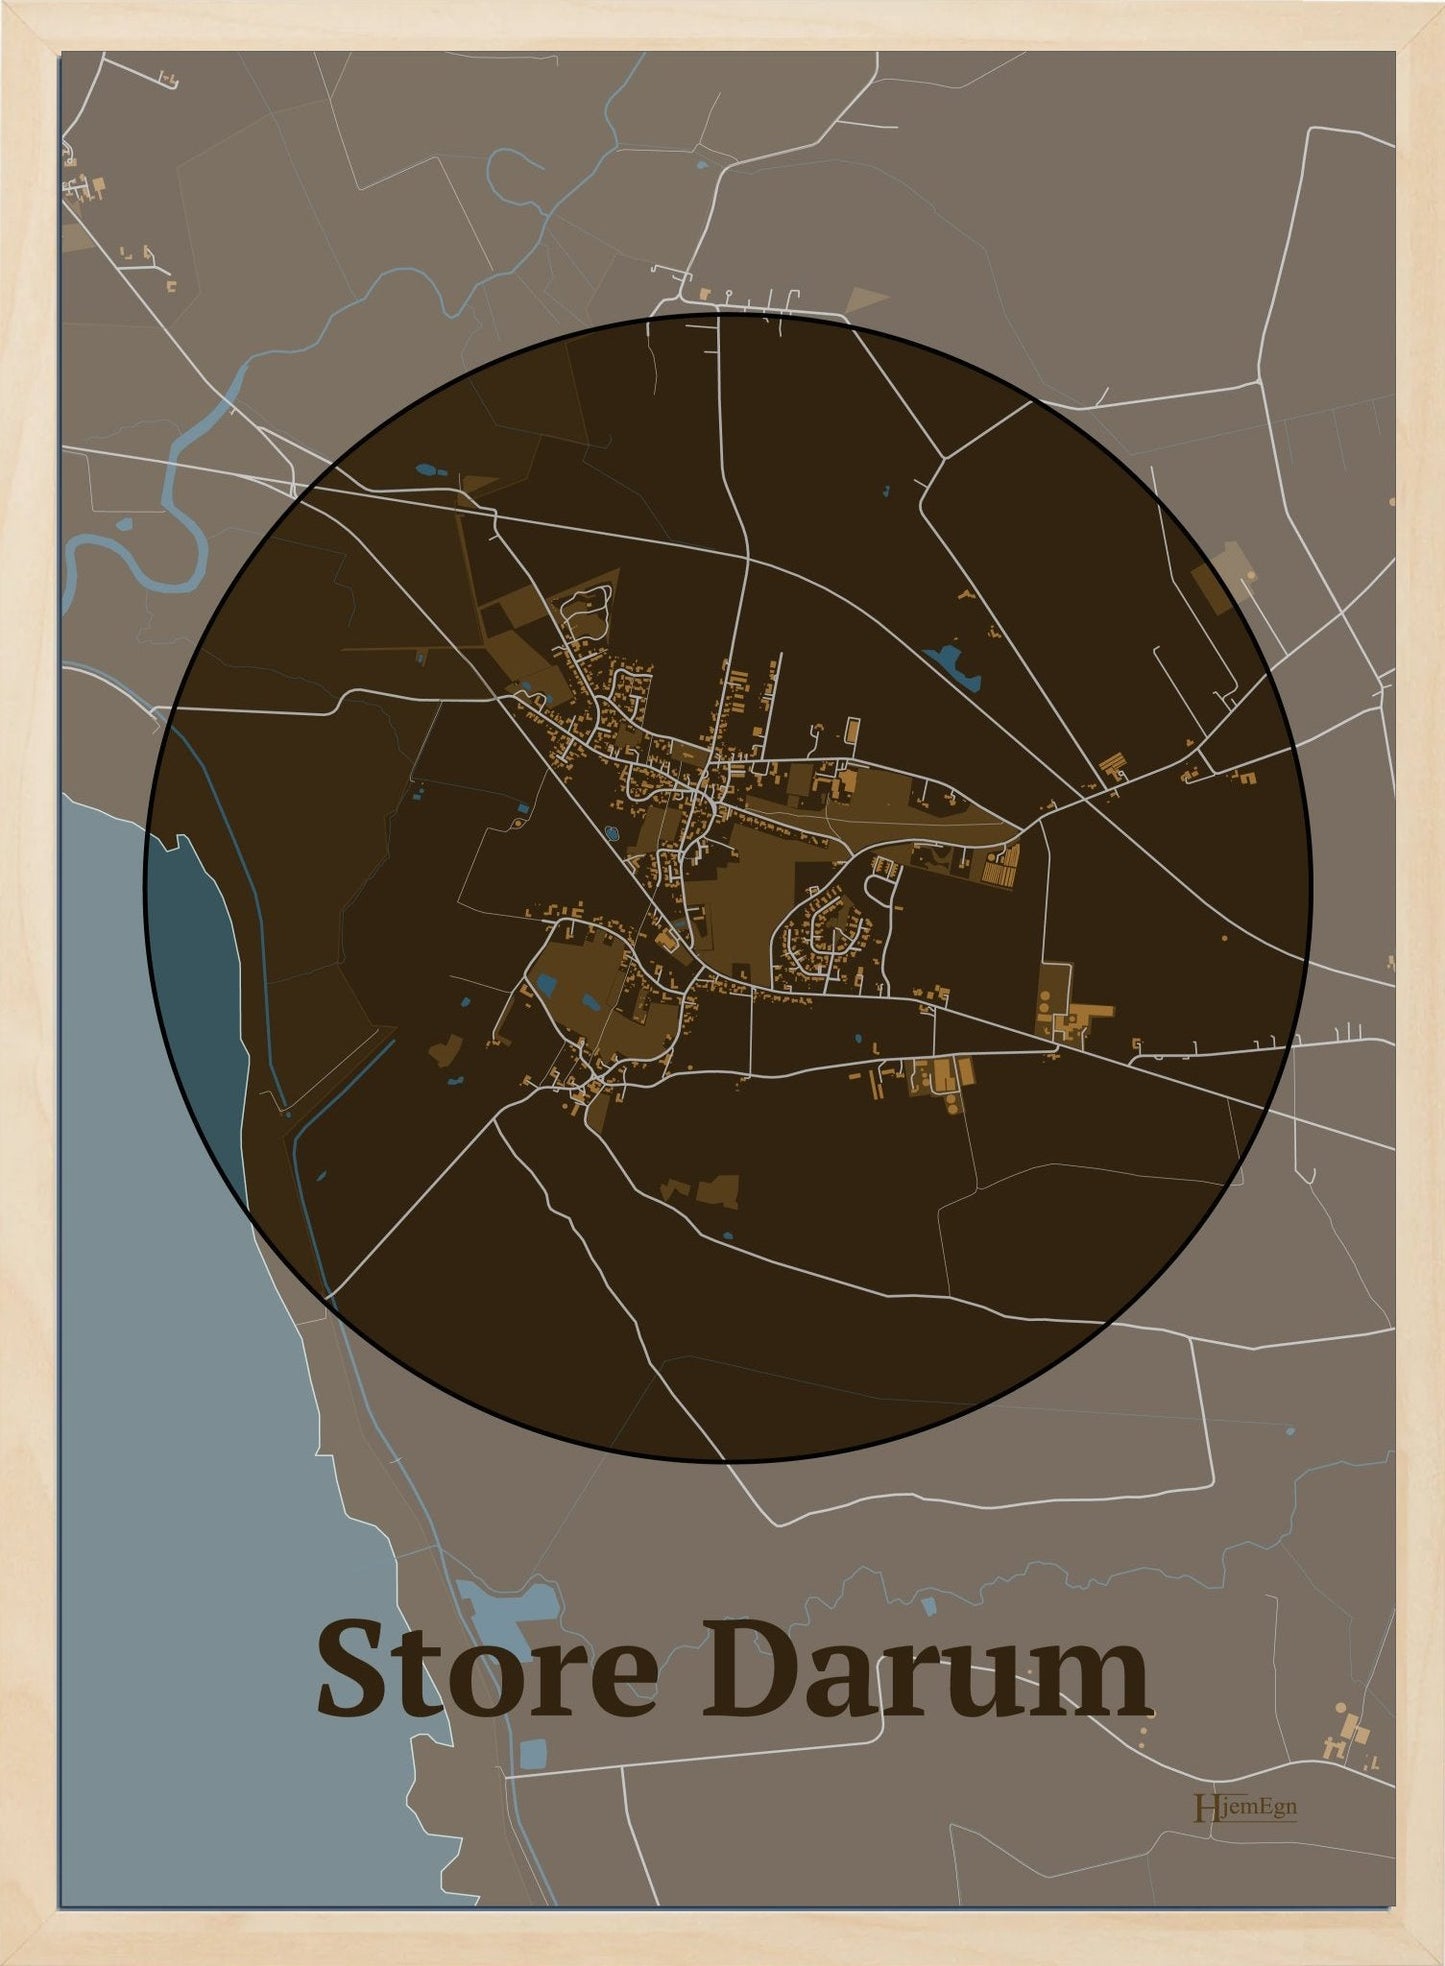 Store Darum plakat i farve mørk brun og HjemEgn.dk design centrum. Design bykort for Store Darum